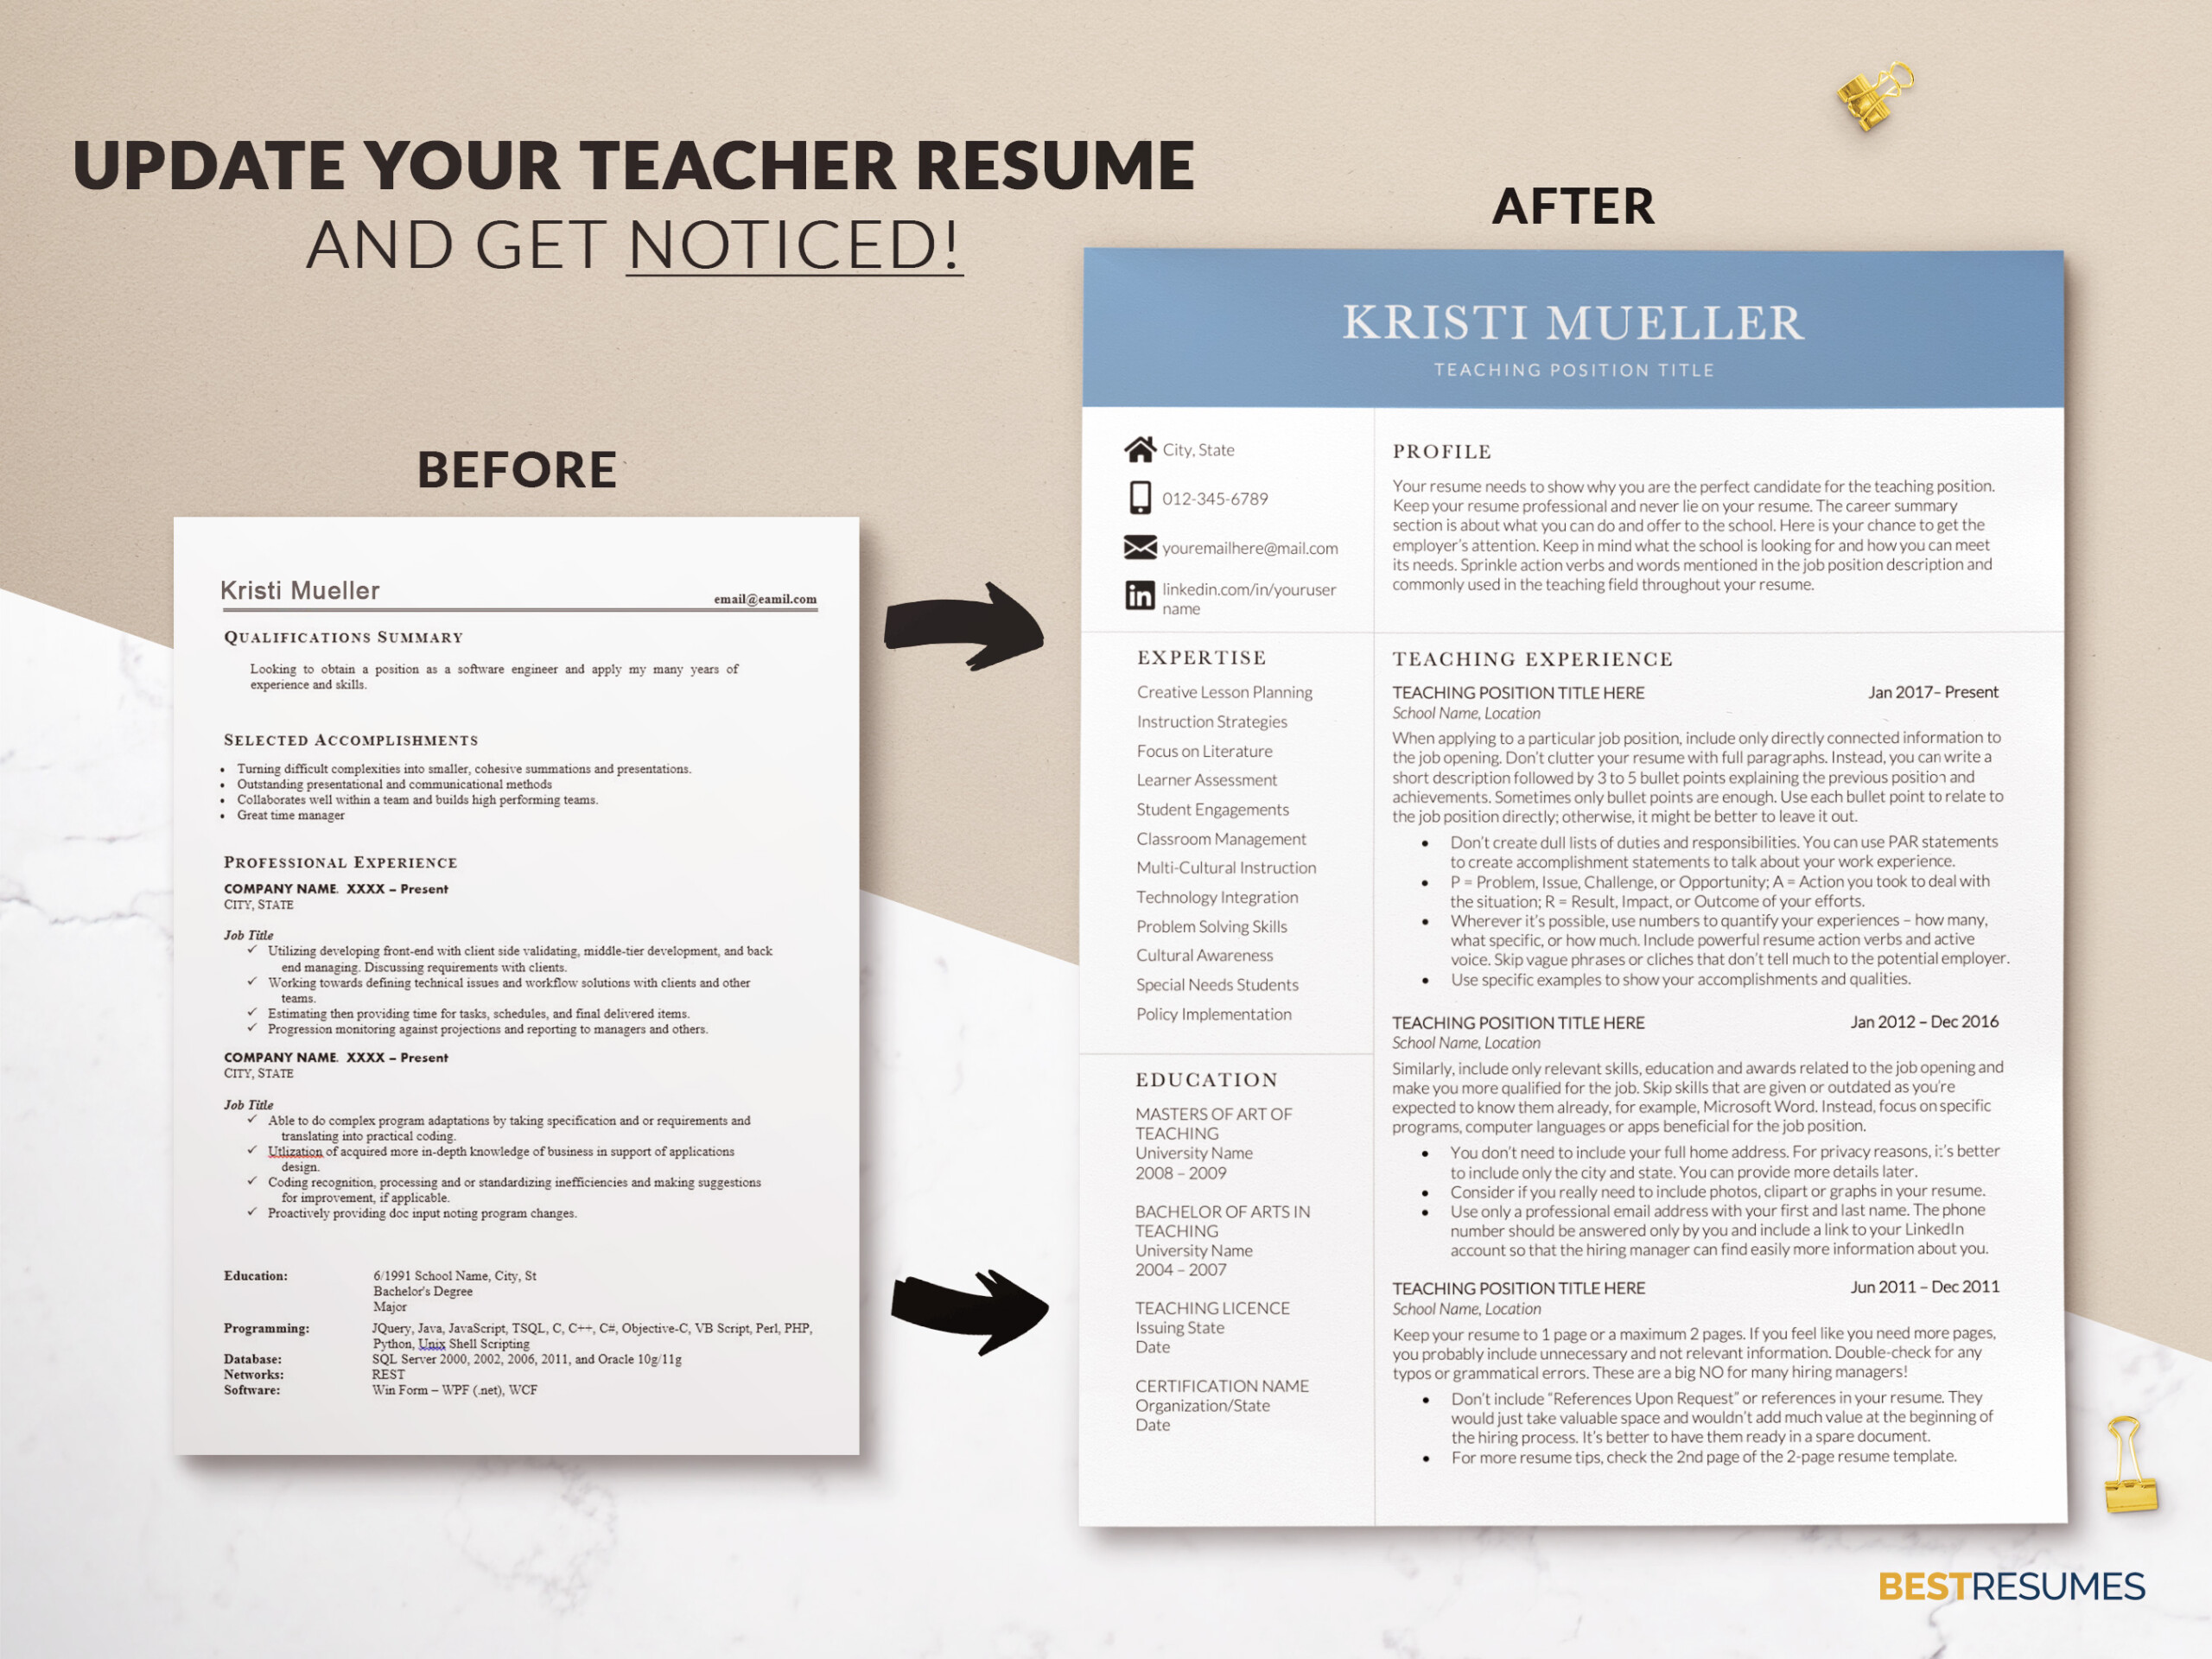 Modern Two Column Resume for Teaching Job Update your Teacher Resume Kristi Mueller